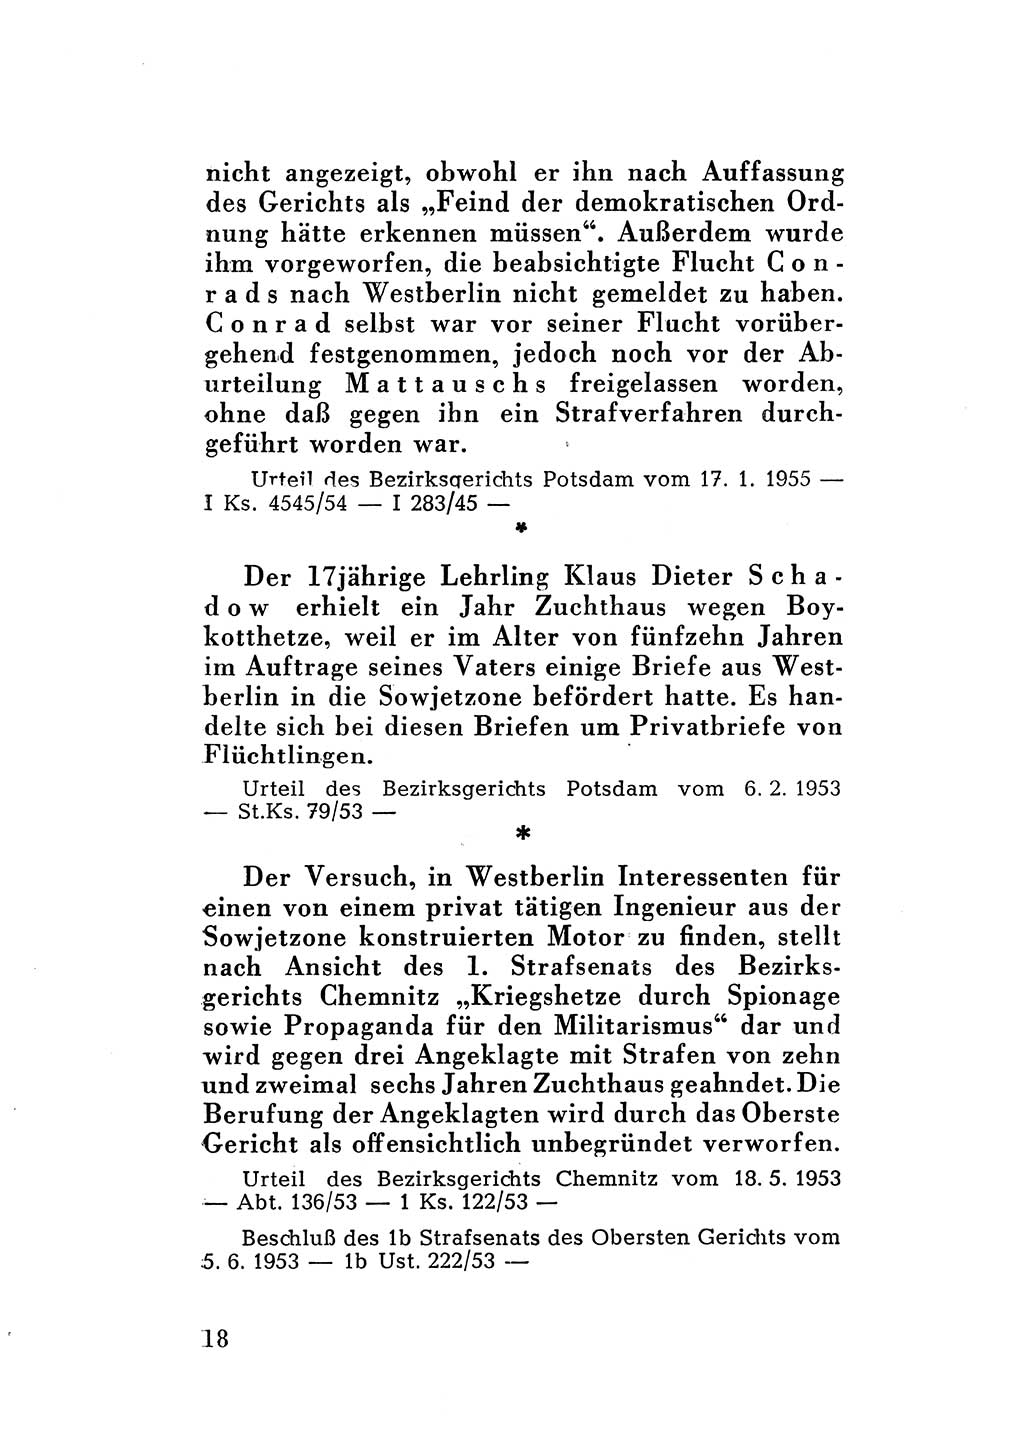 Katalog des Unrechts, Untersuchungsausschuß Freiheitlicher Juristen (UfJ) [Bundesrepublik Deutschland (BRD)] 1956, Seite 18 (Kat. UnR. UfJ BRD 1956, S. 18)